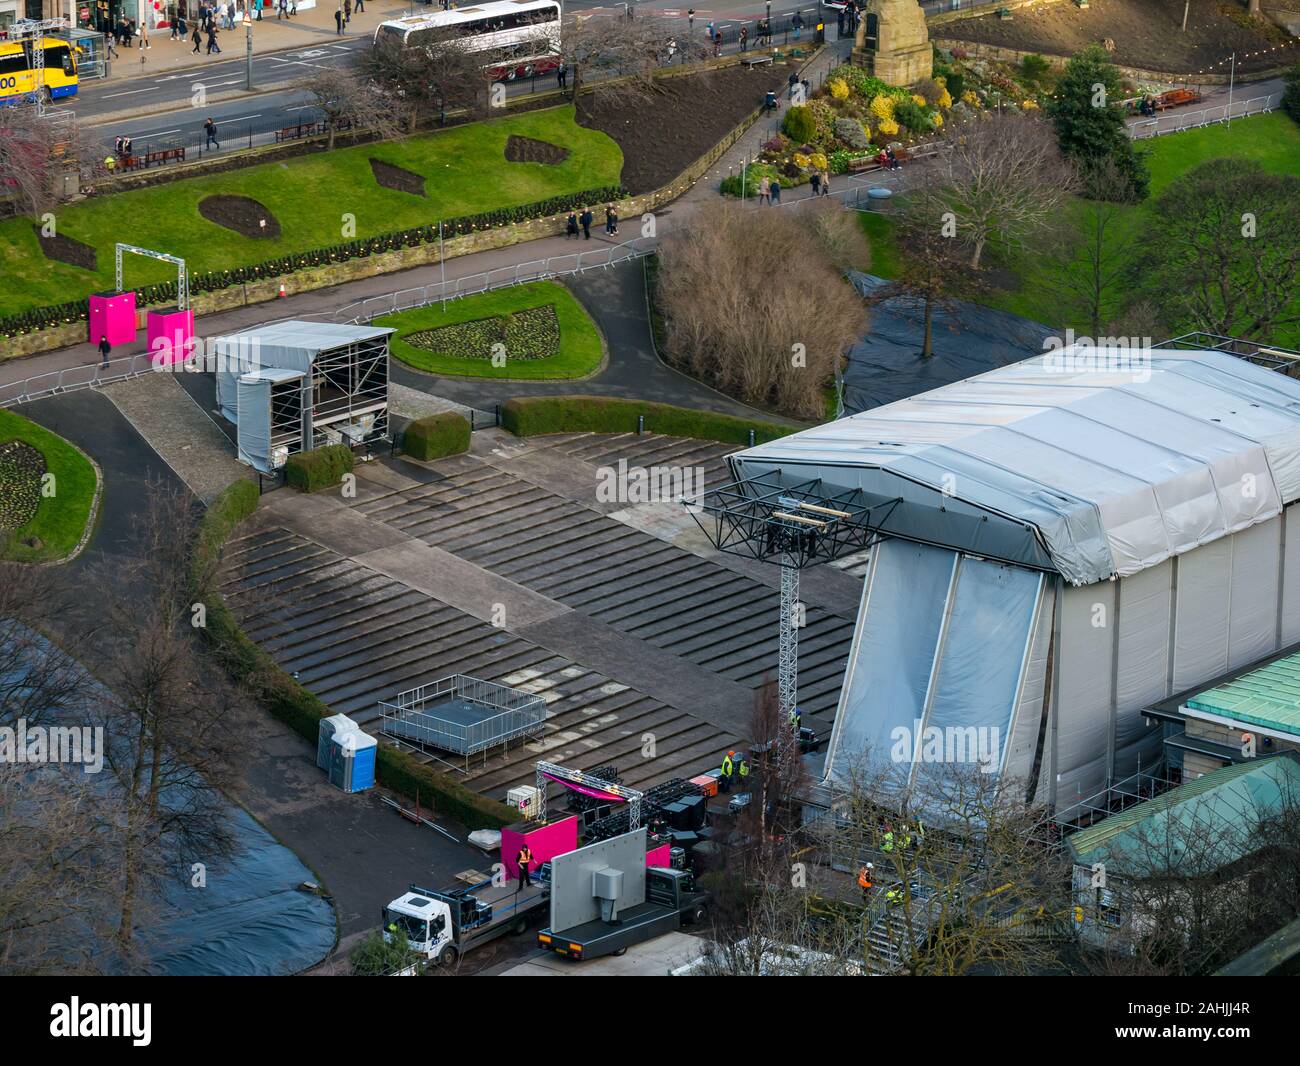 Vorbereitungen für die Hogmanay street party Event, Ross Musikpavillon, Princes Street Gardens, Edinburgh, Schottland, UK von oben gesehen Stockfoto